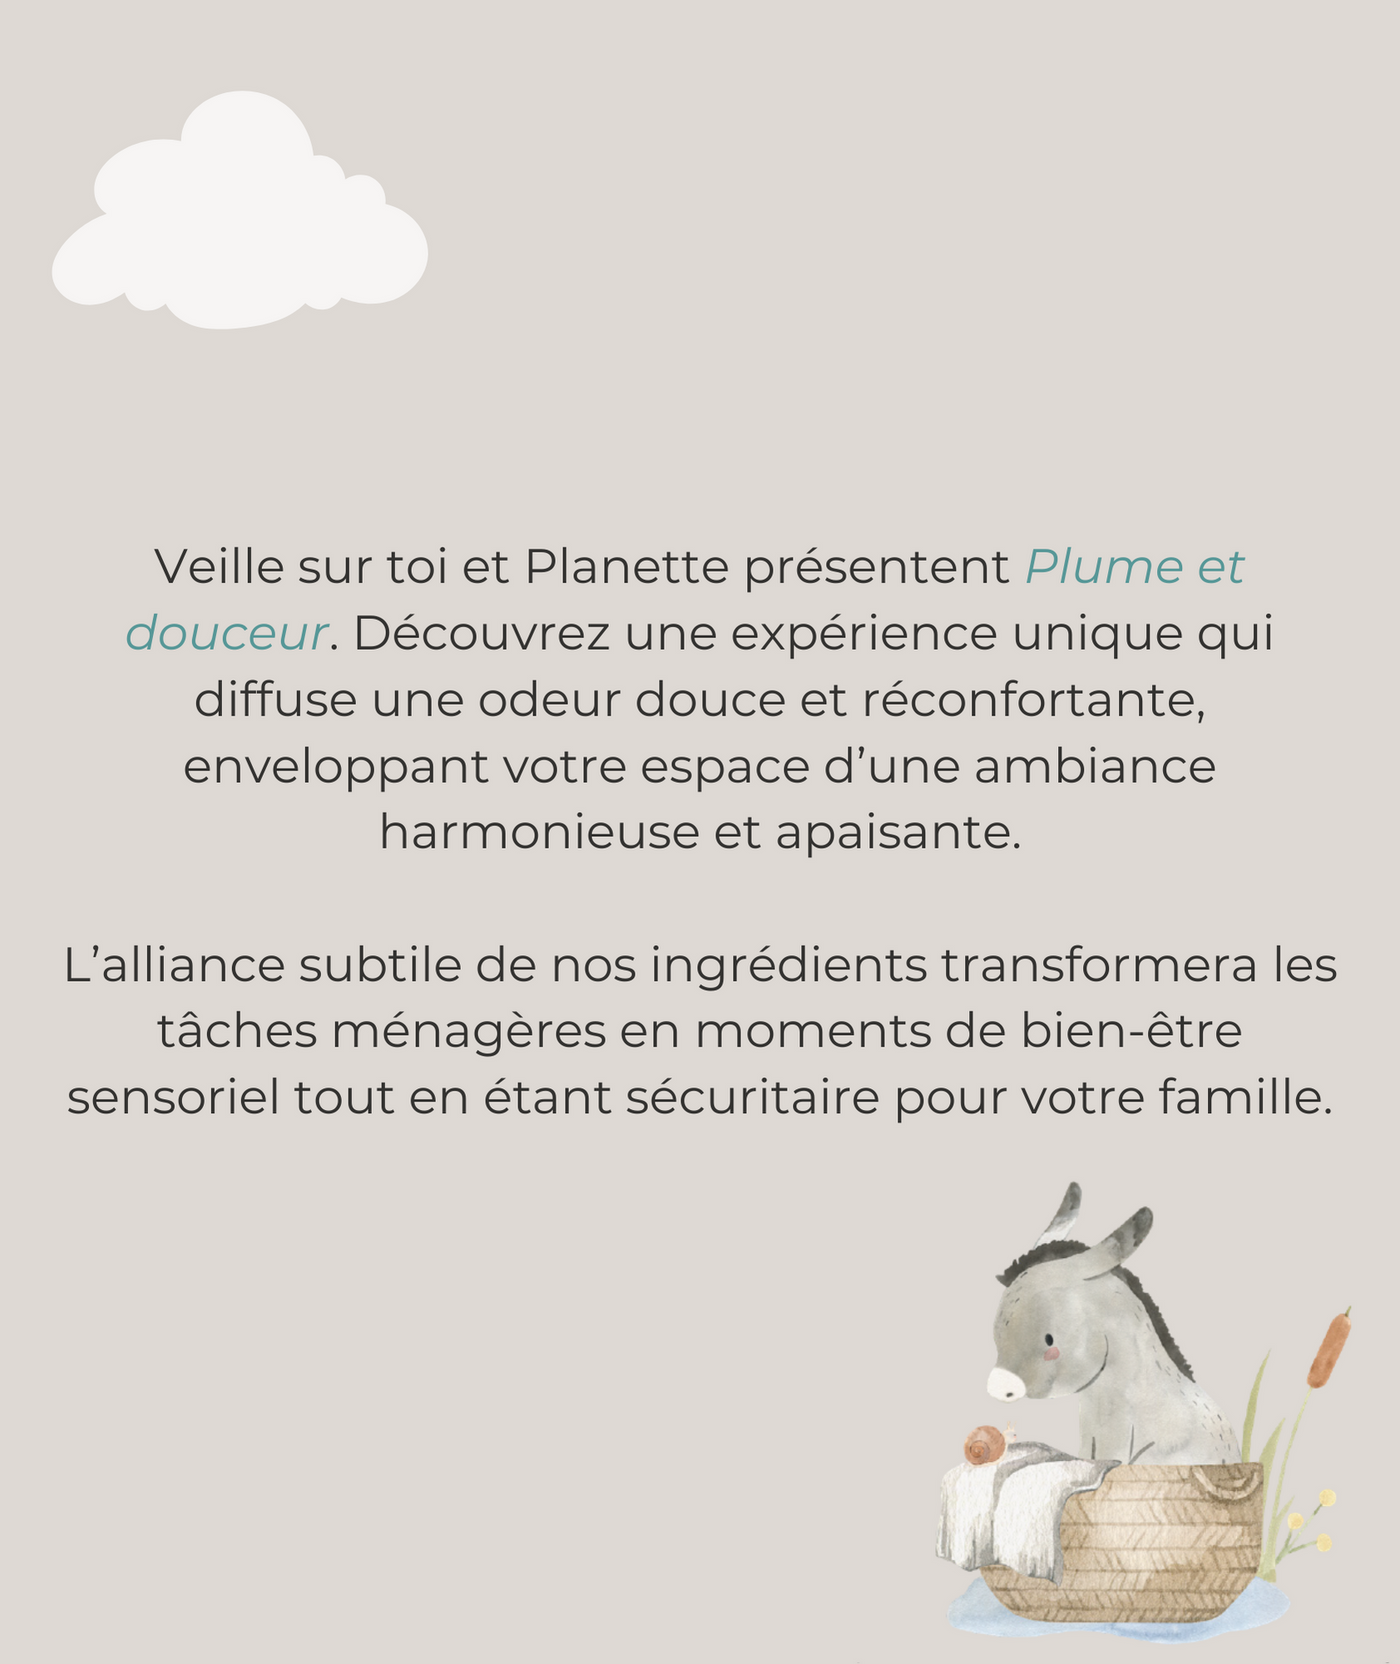 Gamme nettoyante - Lessive délicate - 1L - Boite de 6 - Veille sur toi & Planette